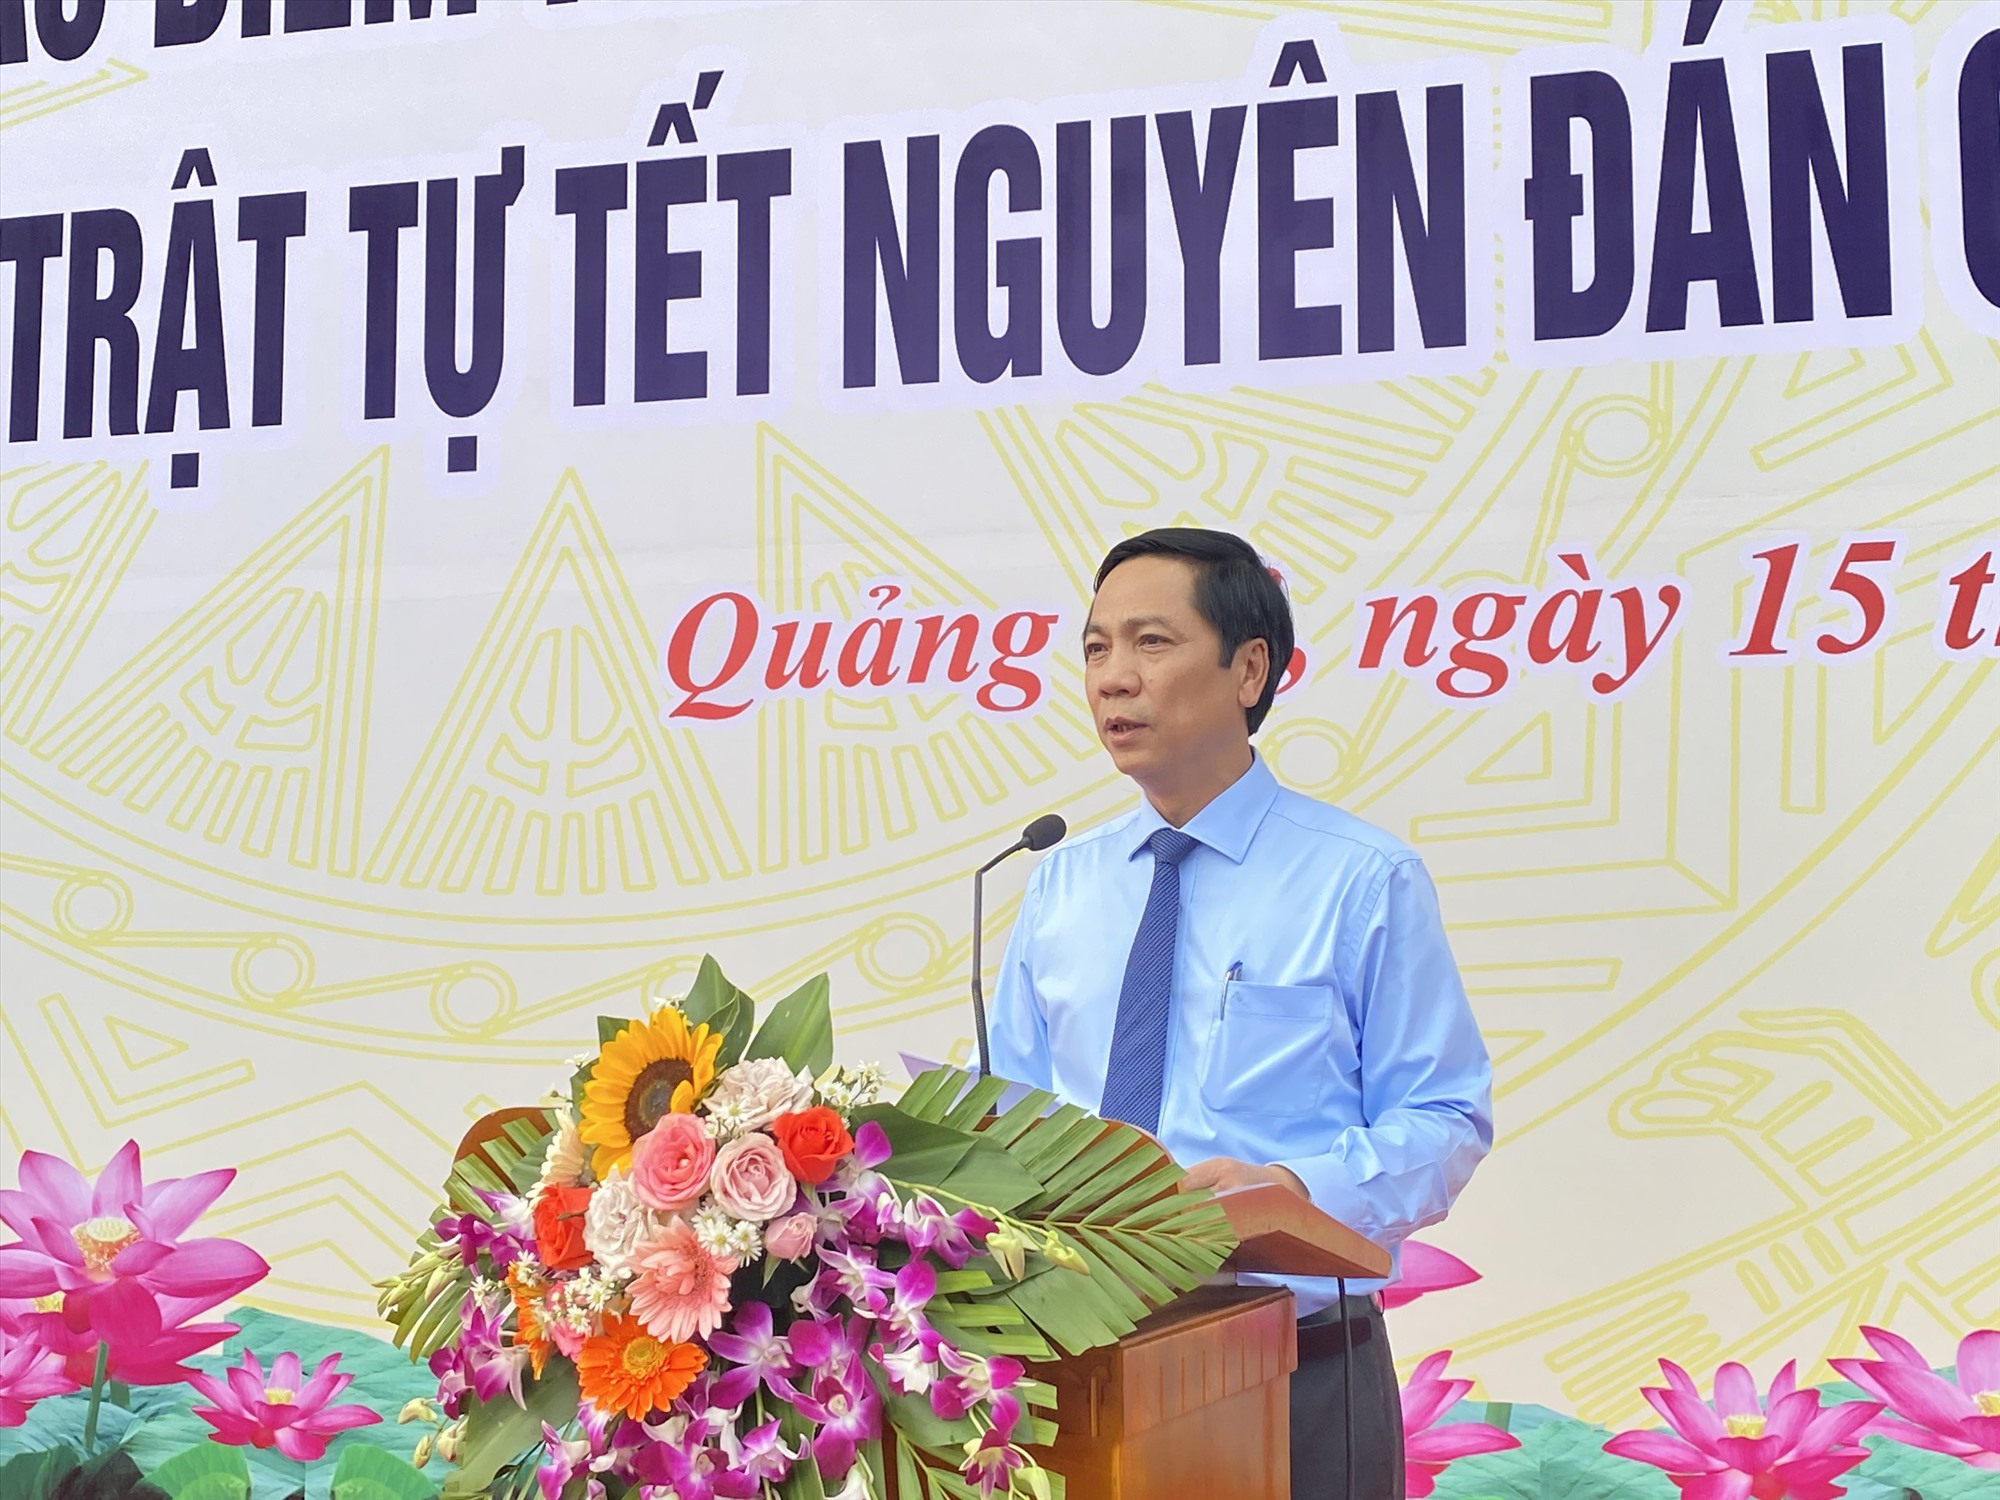 Phó Chủ tịch UBND tỉnh Hoàng Nam phát biểu tại lễ ra quân - Ảnh: T.P